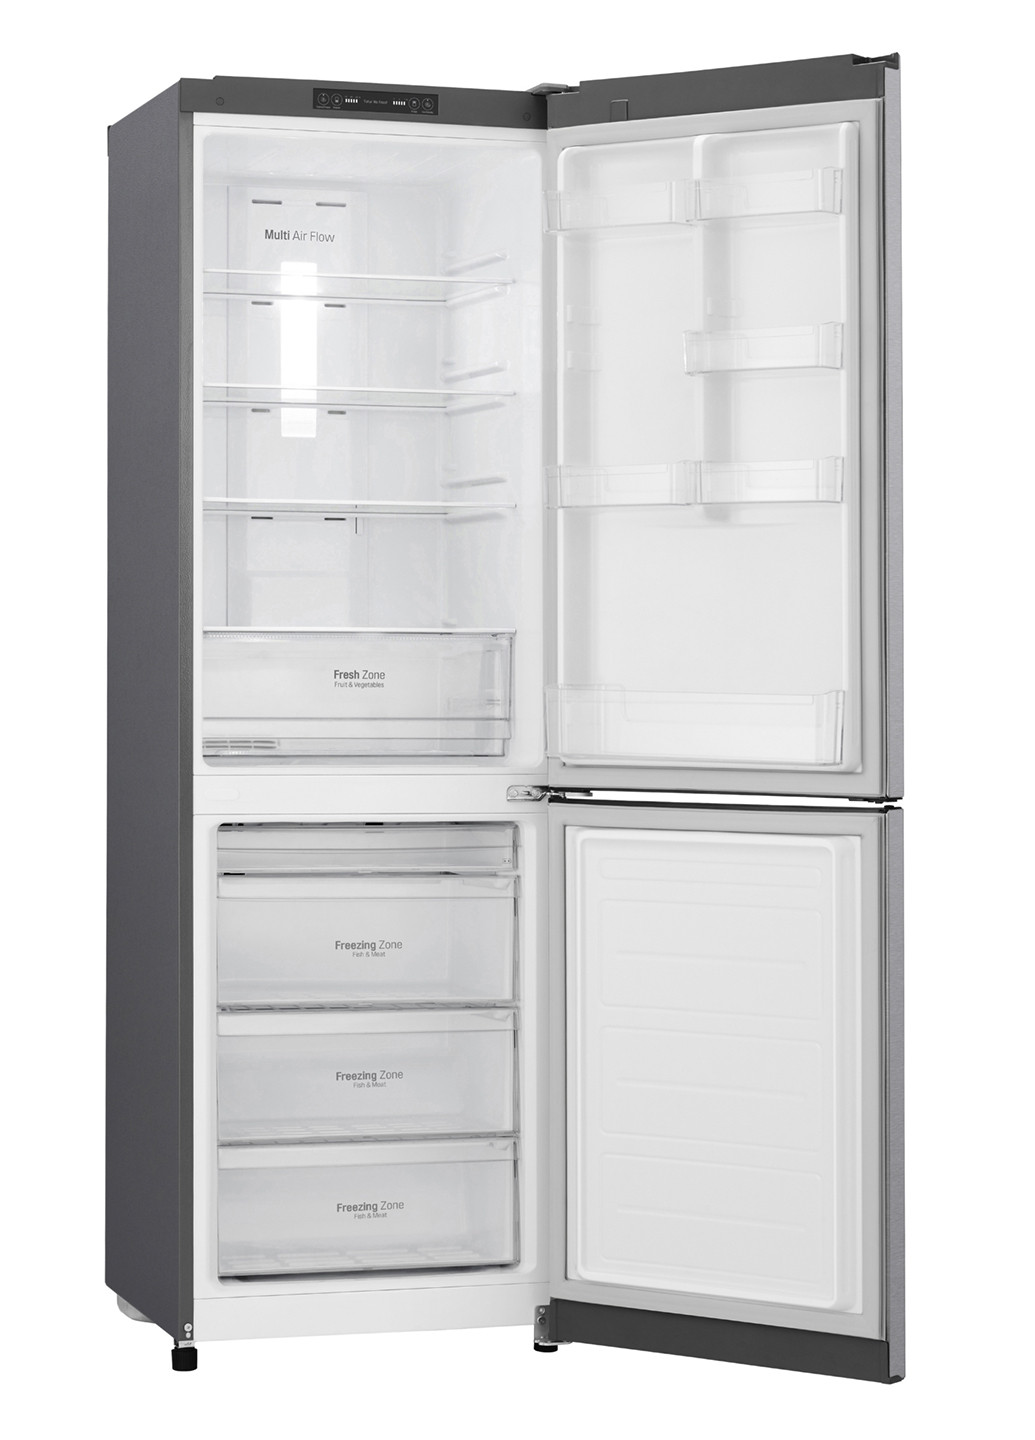 Холодильник LG ga-b419sljl (154677296)